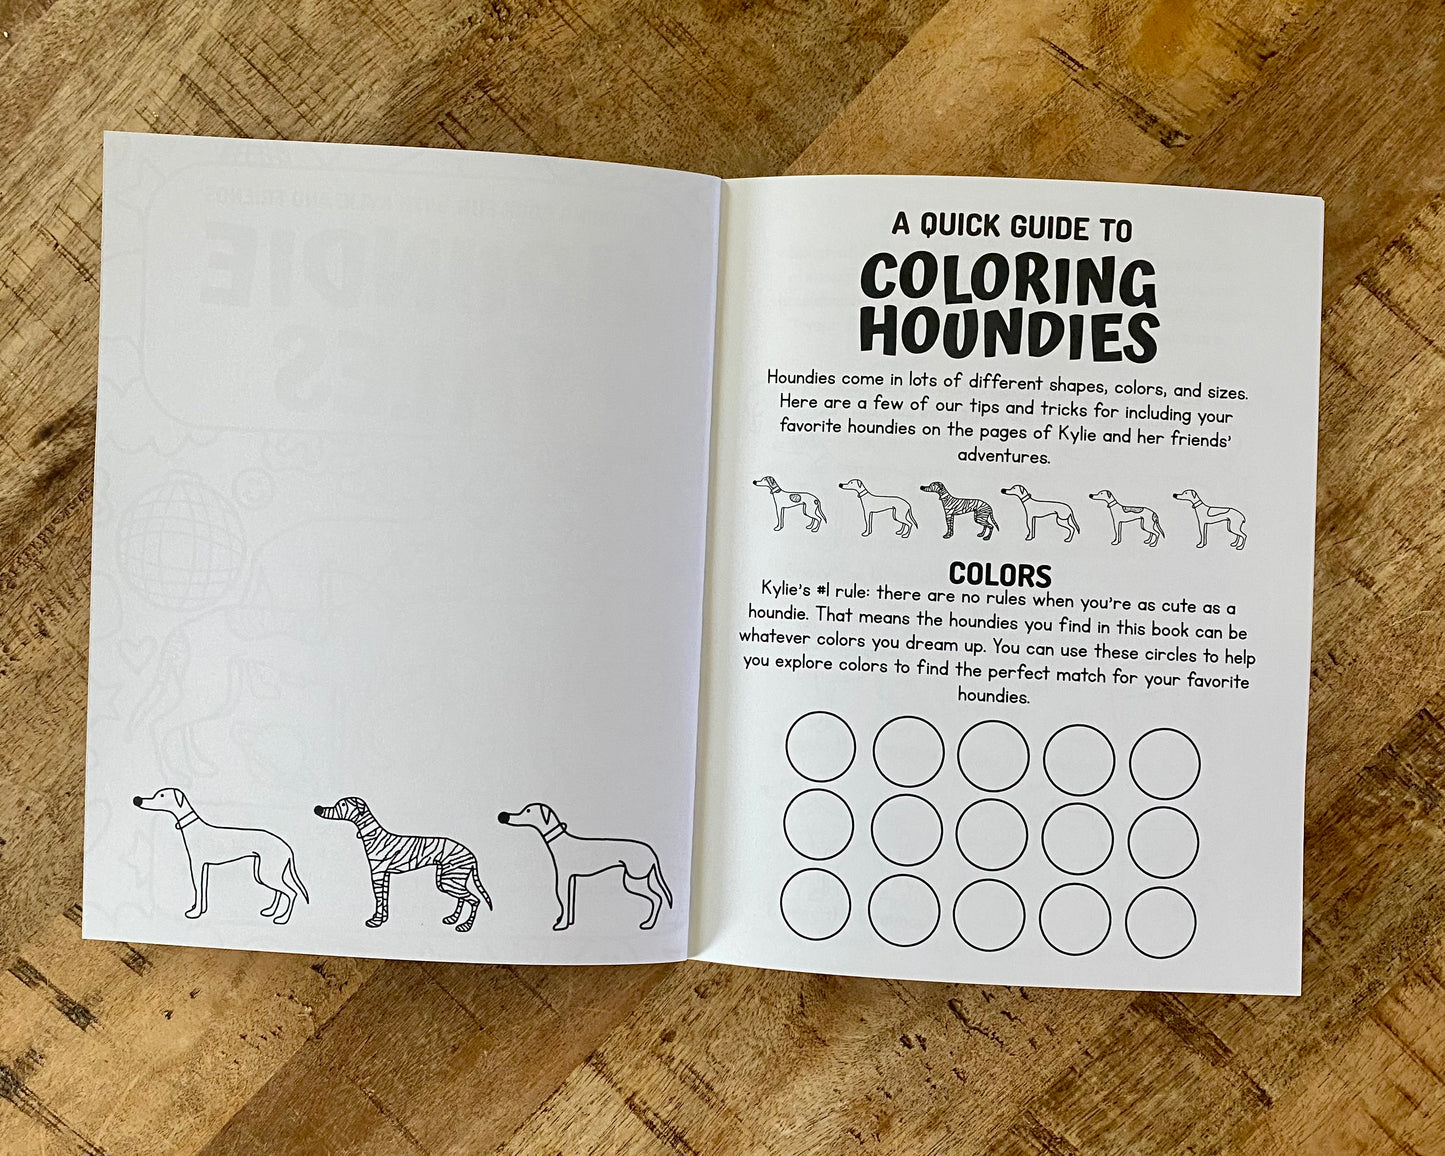 Coloring Book | Houndie Tales